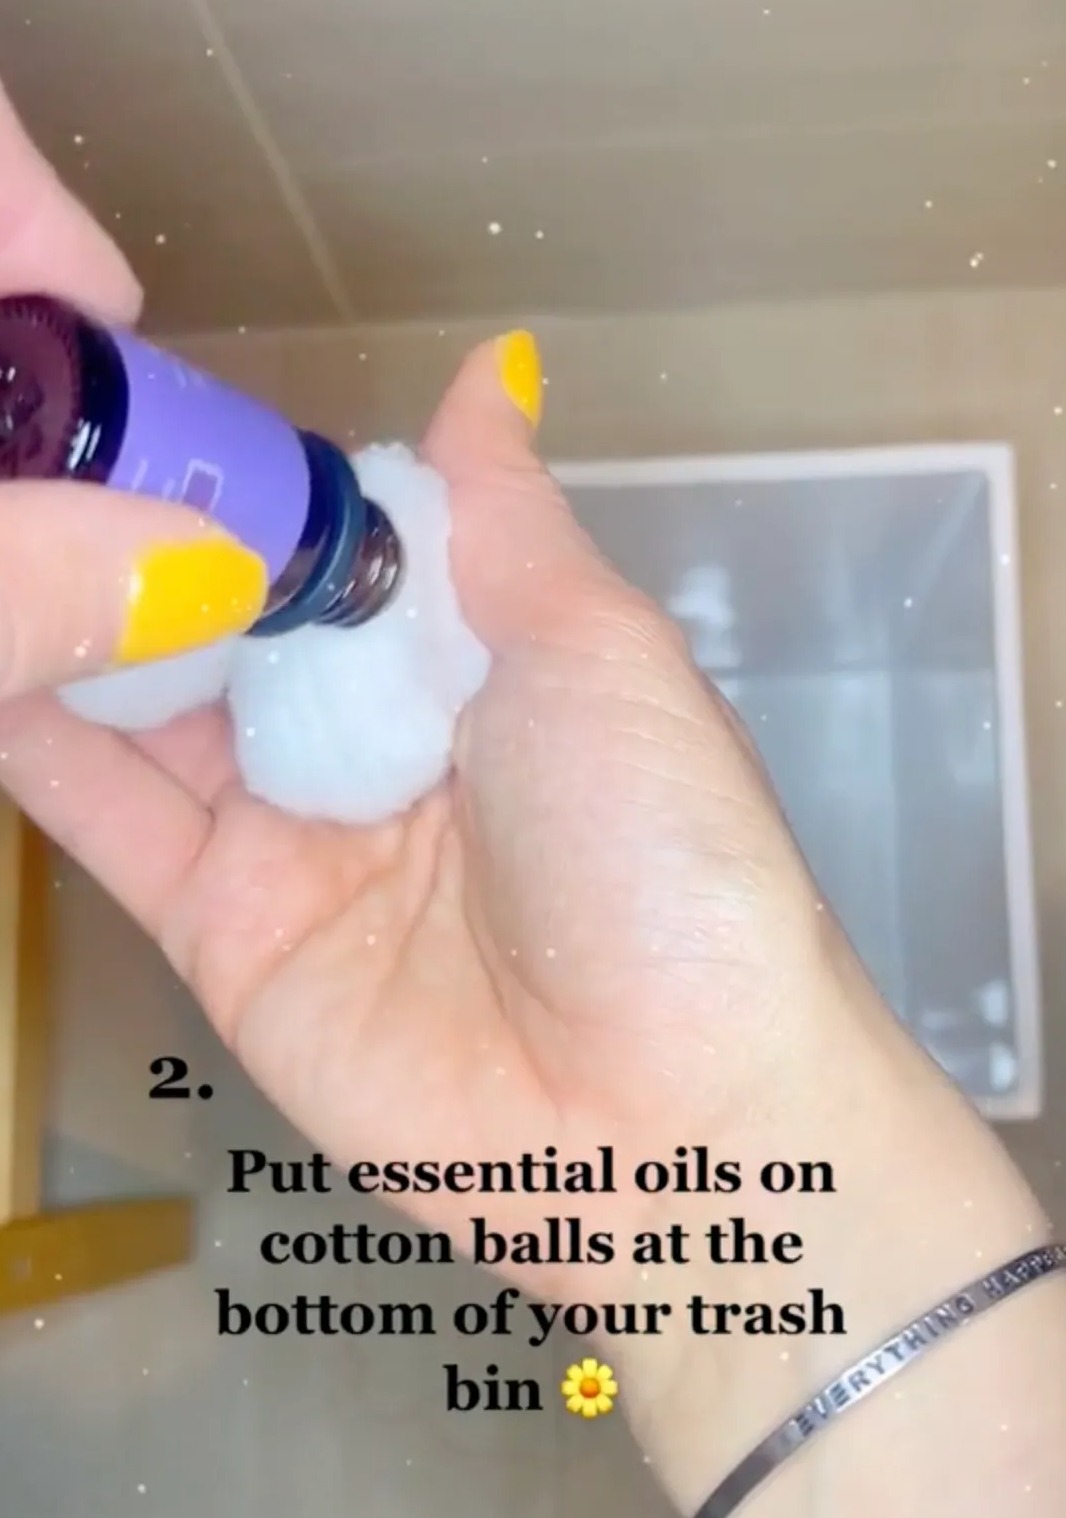 Halten Sie Gerüche fern, indem Sie ätherische Öle in Behältern verwenden